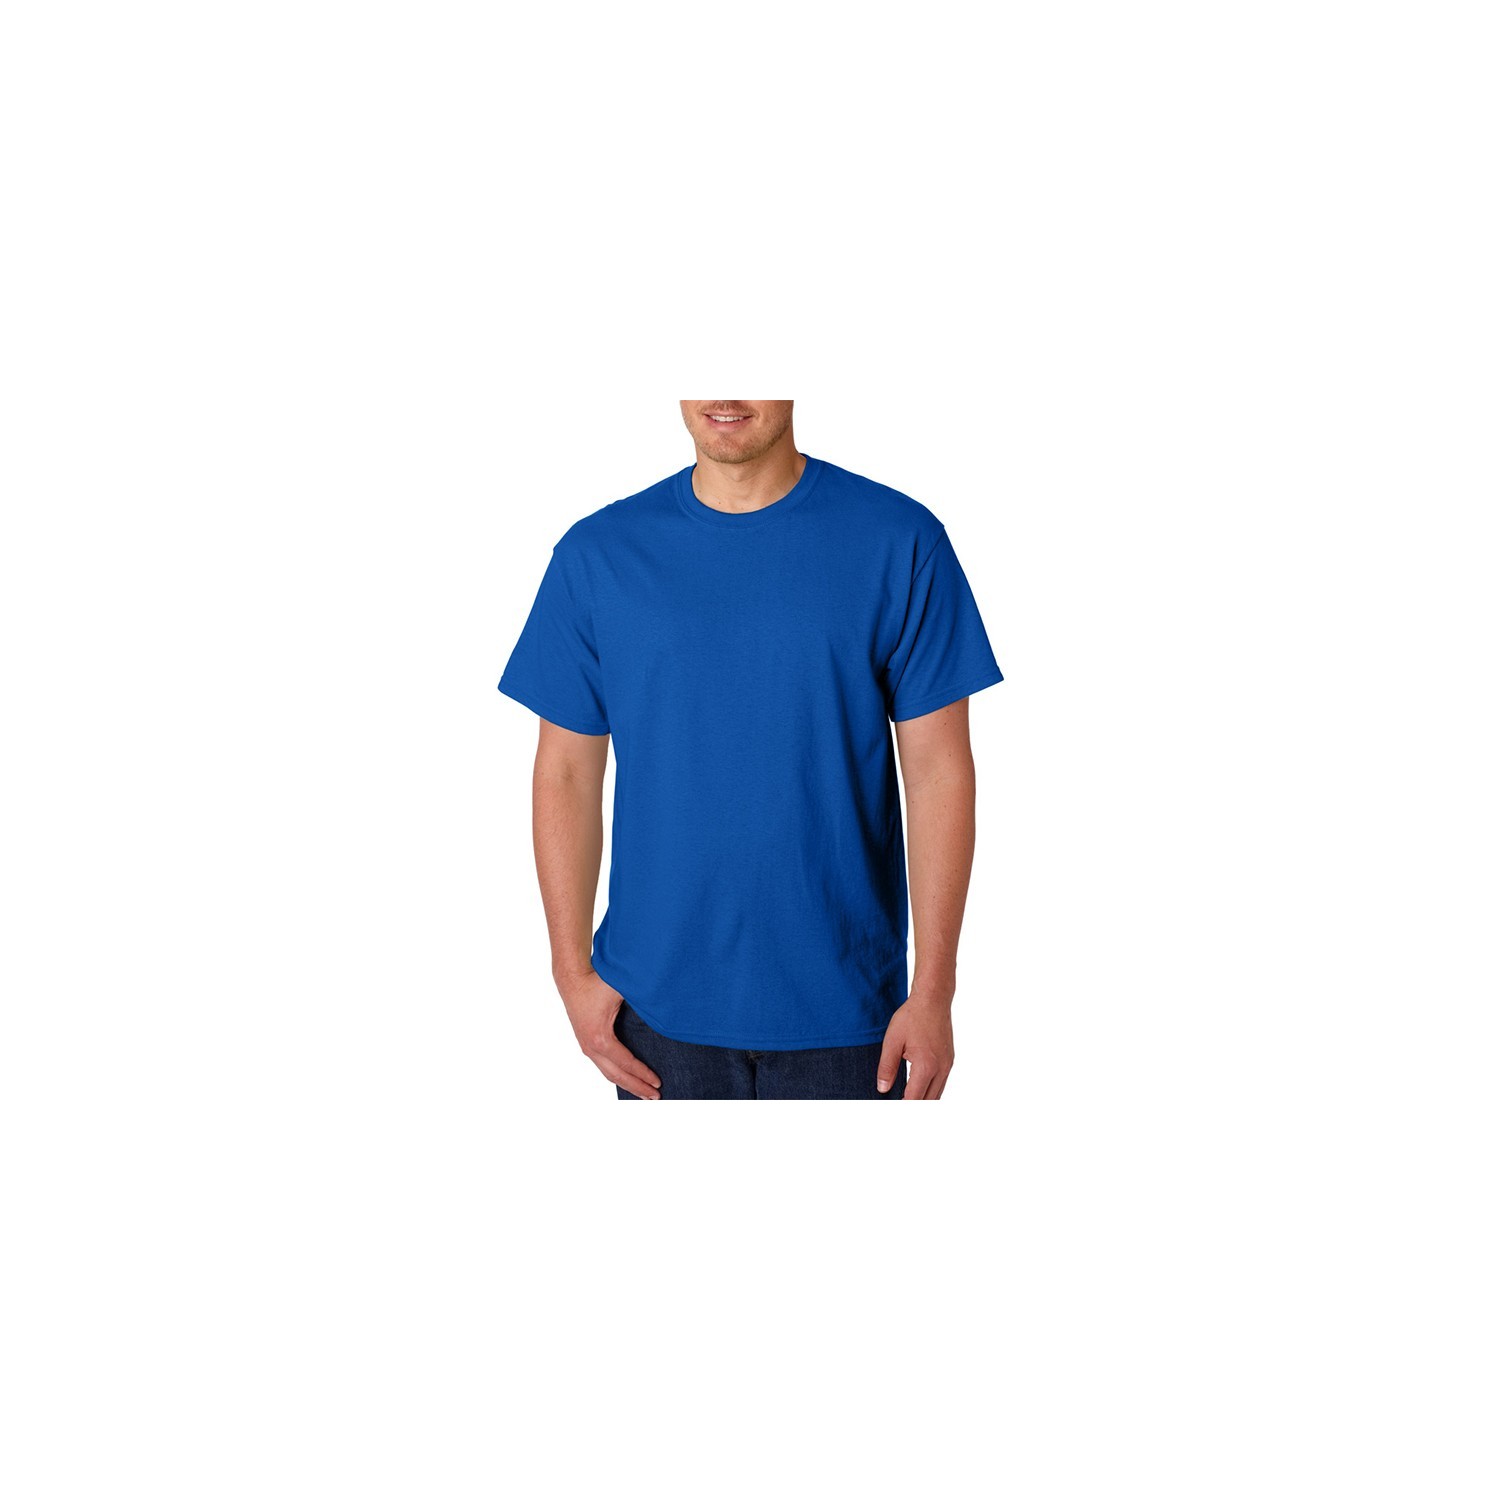 T-shirt Homem MC 150 Keya - Cor Azul Royal